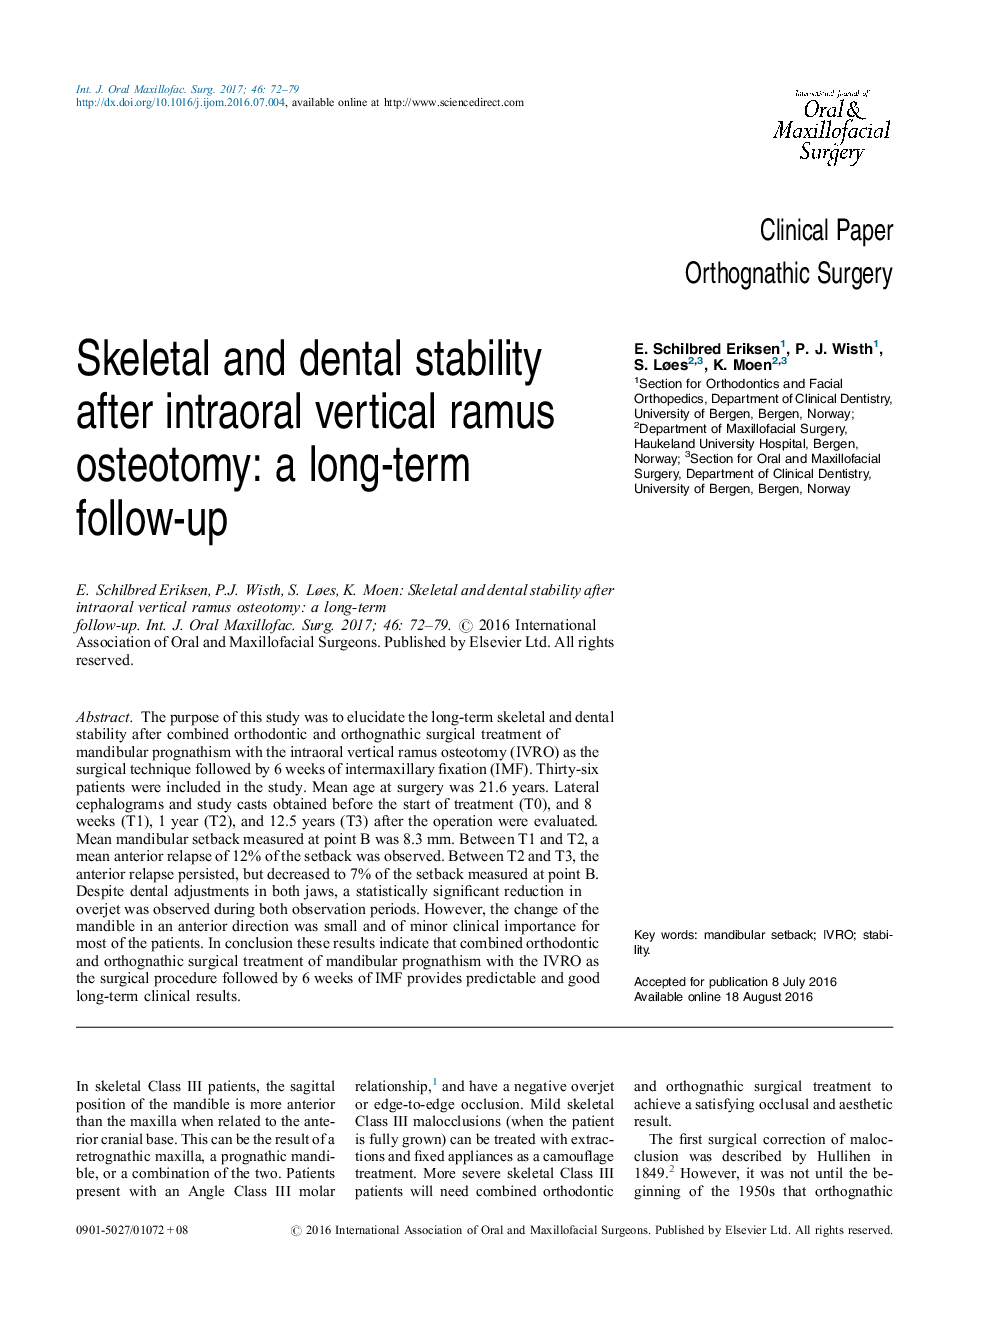 پایداری اسکلتی و دندانی پس از استئوتومی عمودی رموس داخل مفصلی: پیگیری طولانی مدت 